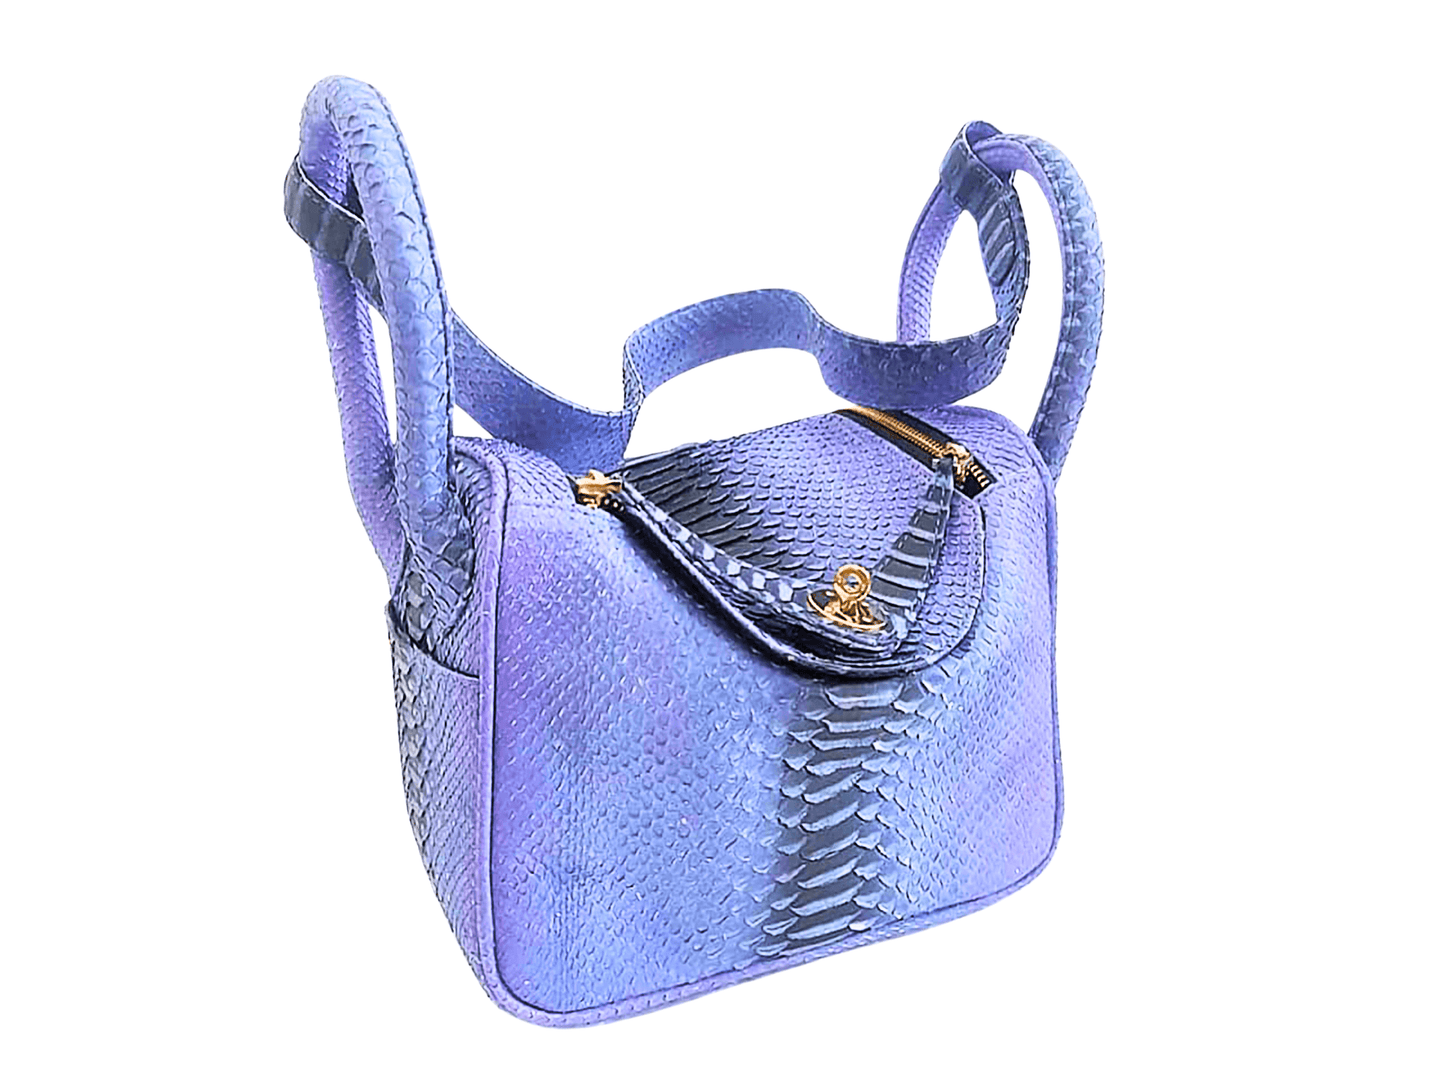 Hermes Snakeskin Lindy Bag 25 Wild Blue Yonder Python Jacket by LFM Fashion